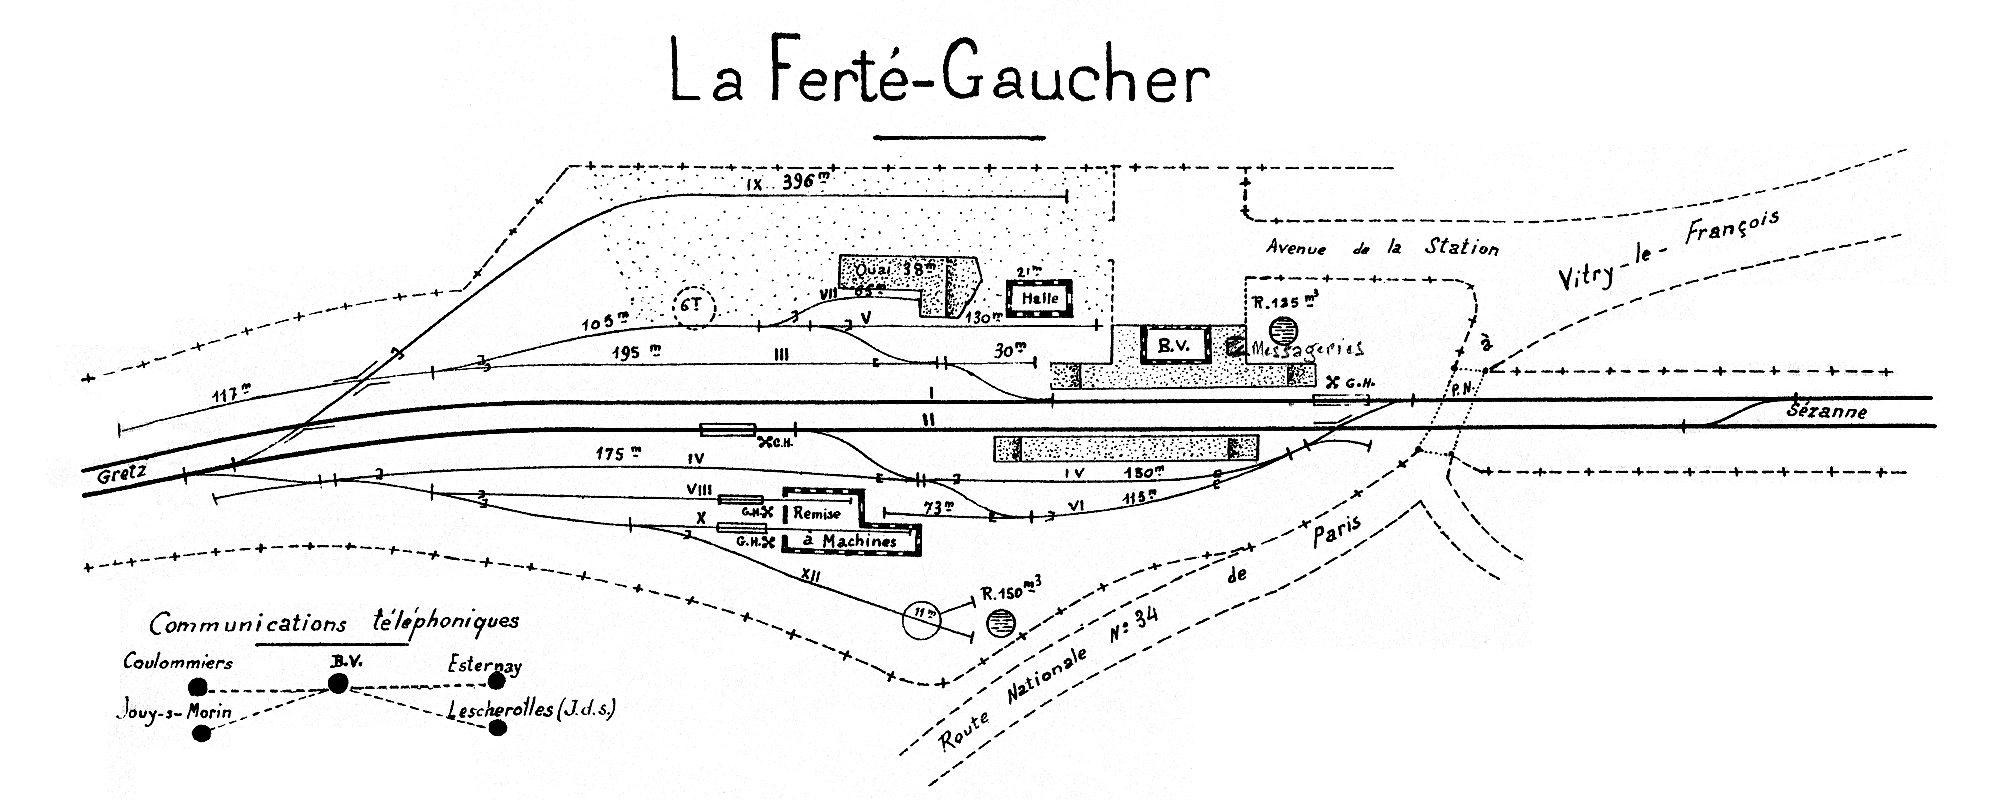 CHEMINS DE FER DE L'EST • CROQUIS DES GARES • LA FERTÉ-GAUCHER (1925)